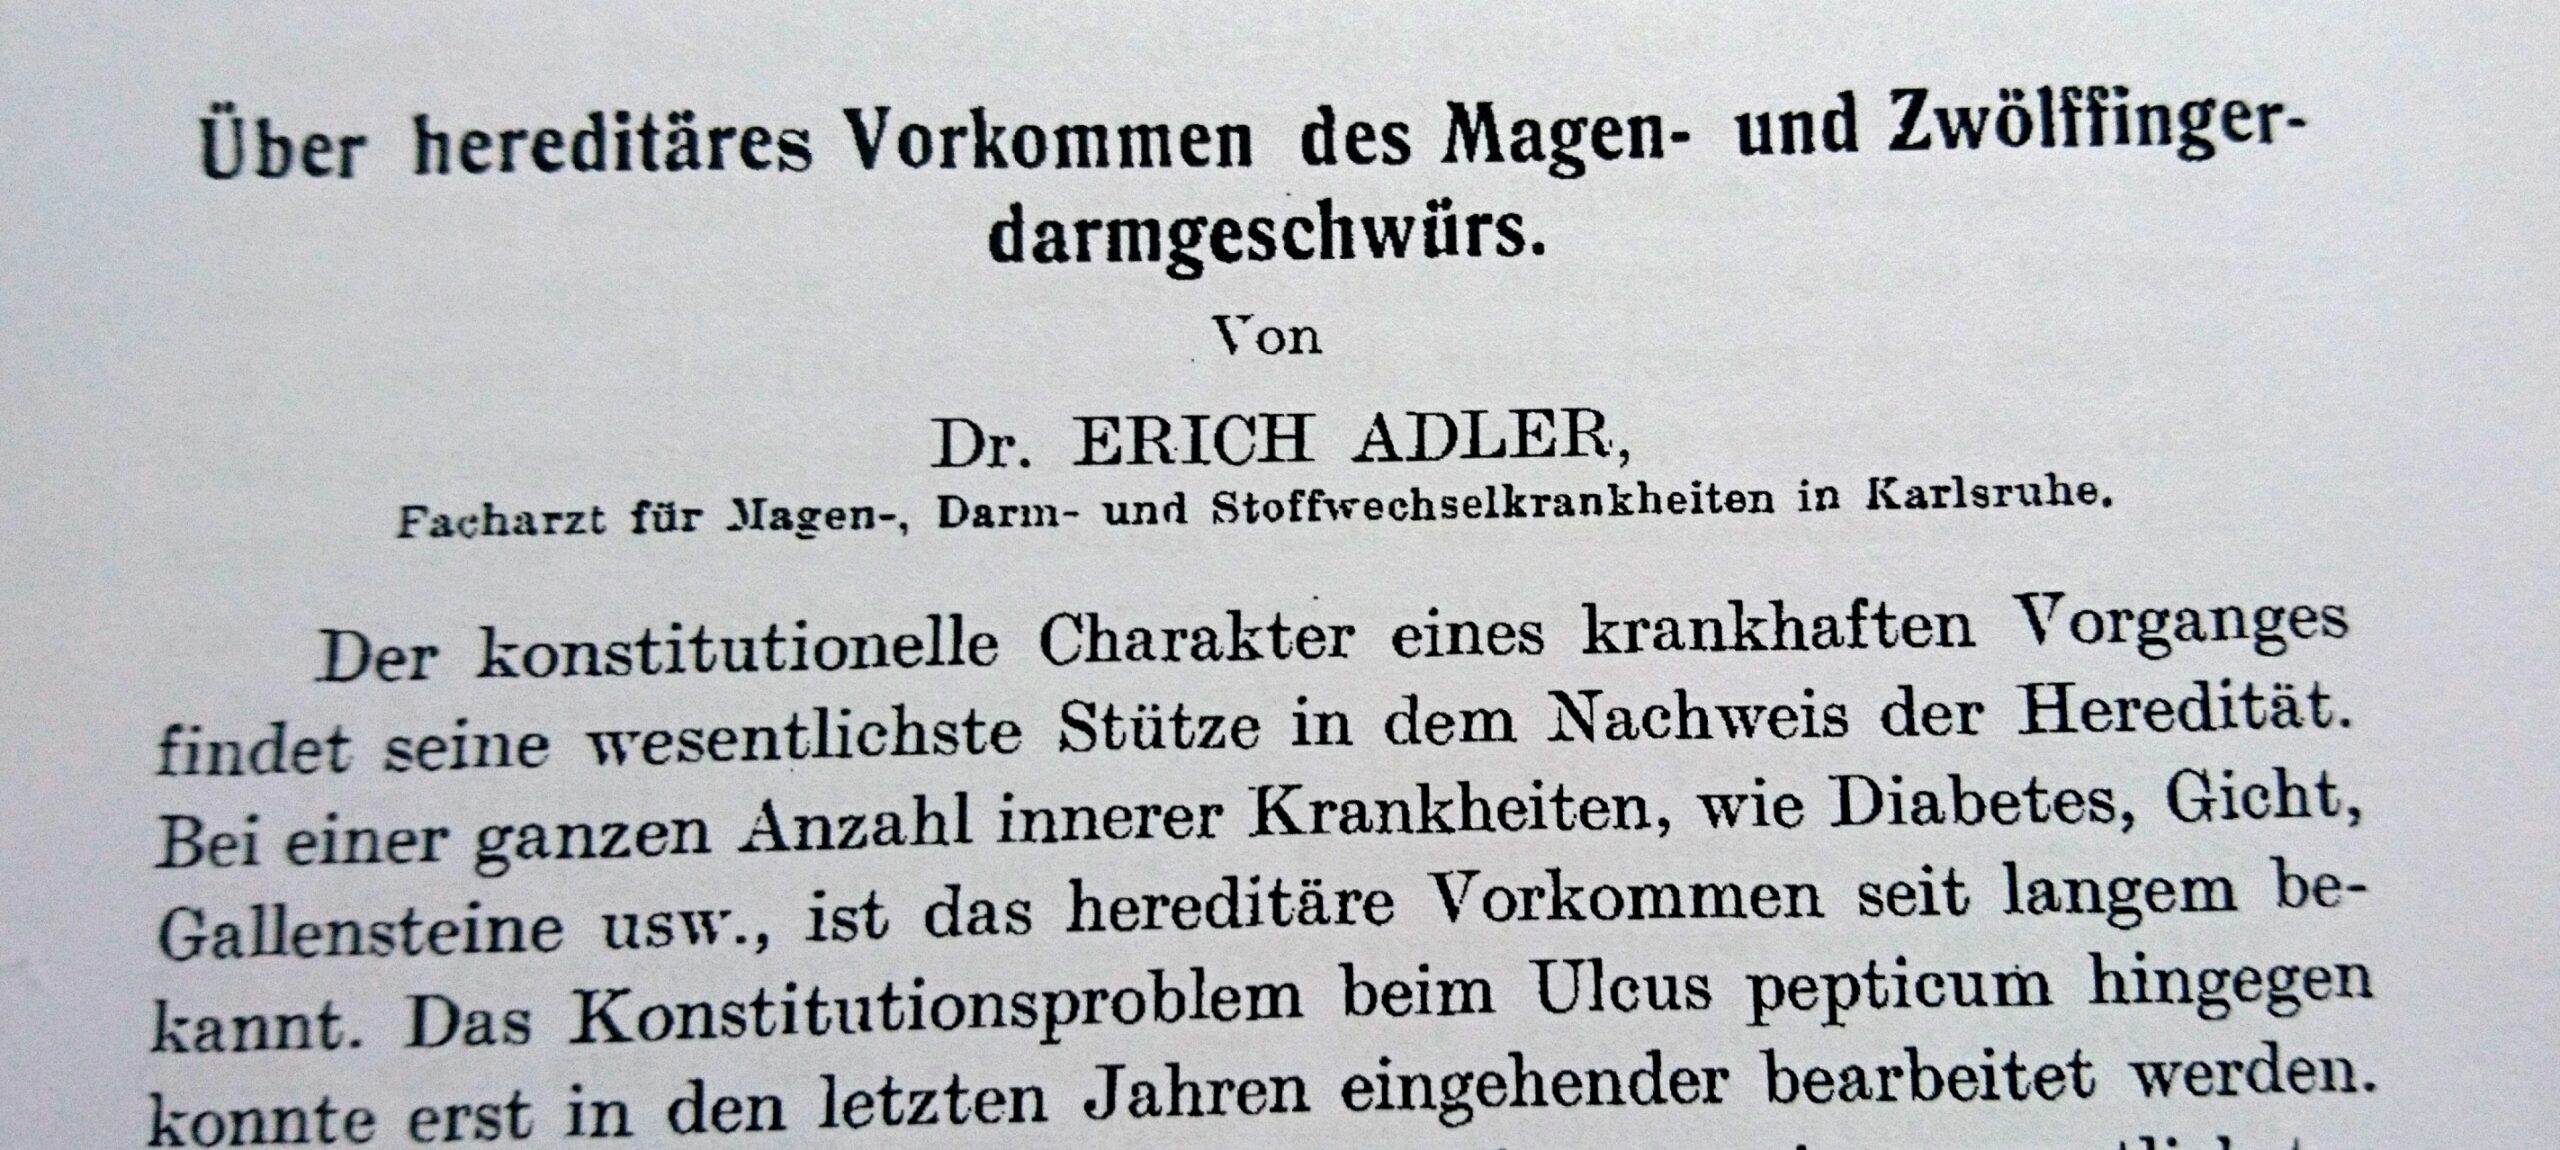 Archiv für Verdauungs-Krankheiten, Festschrift für Leopold Kuttner 1926